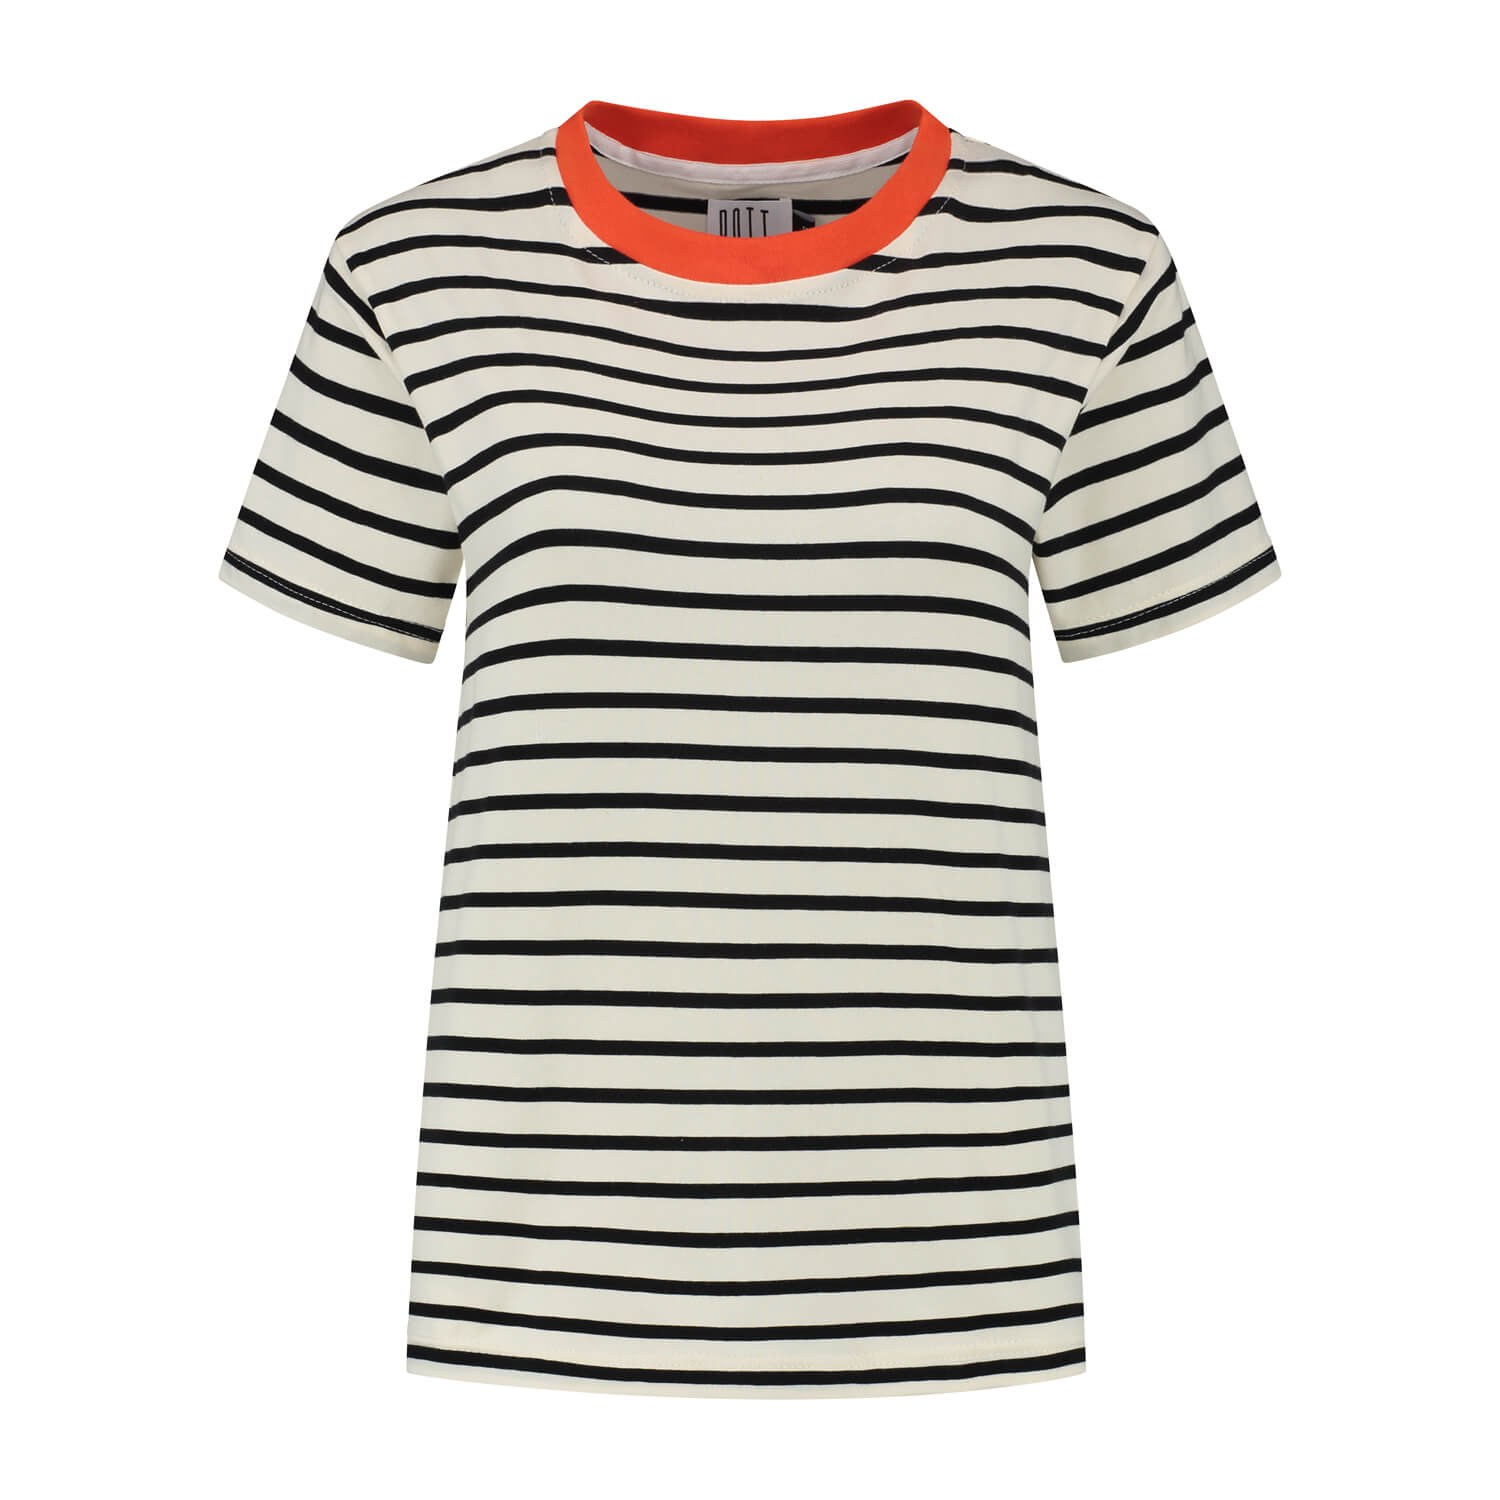 Women's organic striped t-shirt - zwart/wit met oranje boord